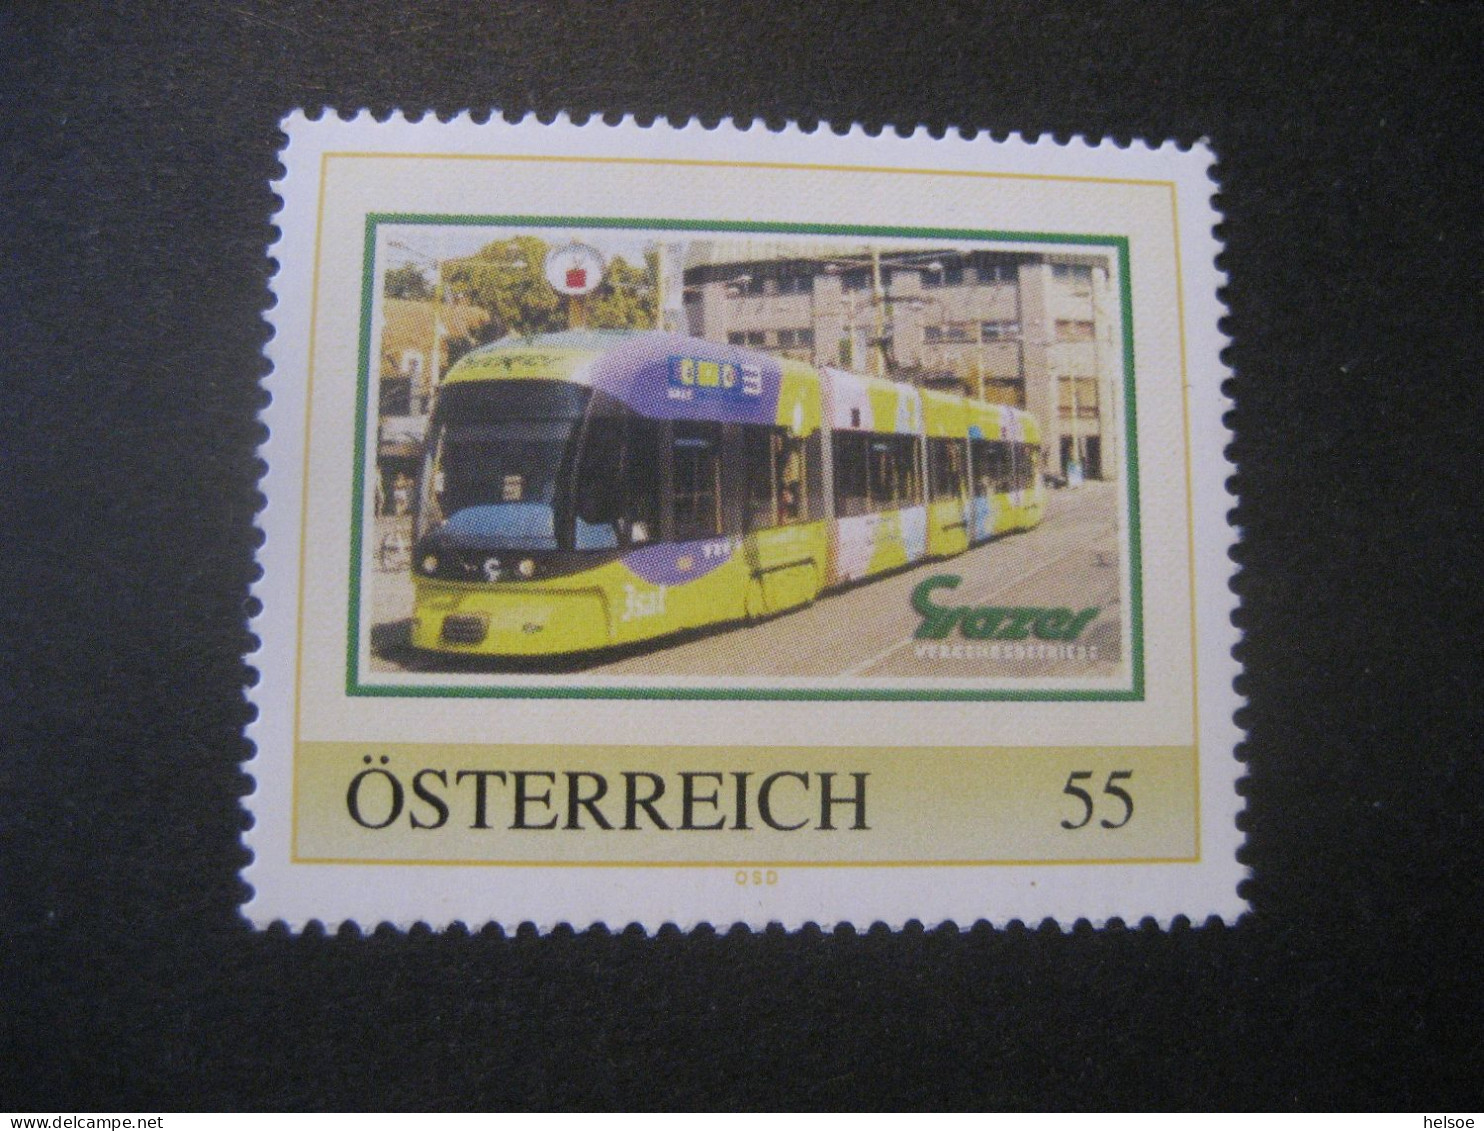 Österreich- PM Grazer Verkehrsbetriebe Ungebraucht - Persoonlijke Postzegels